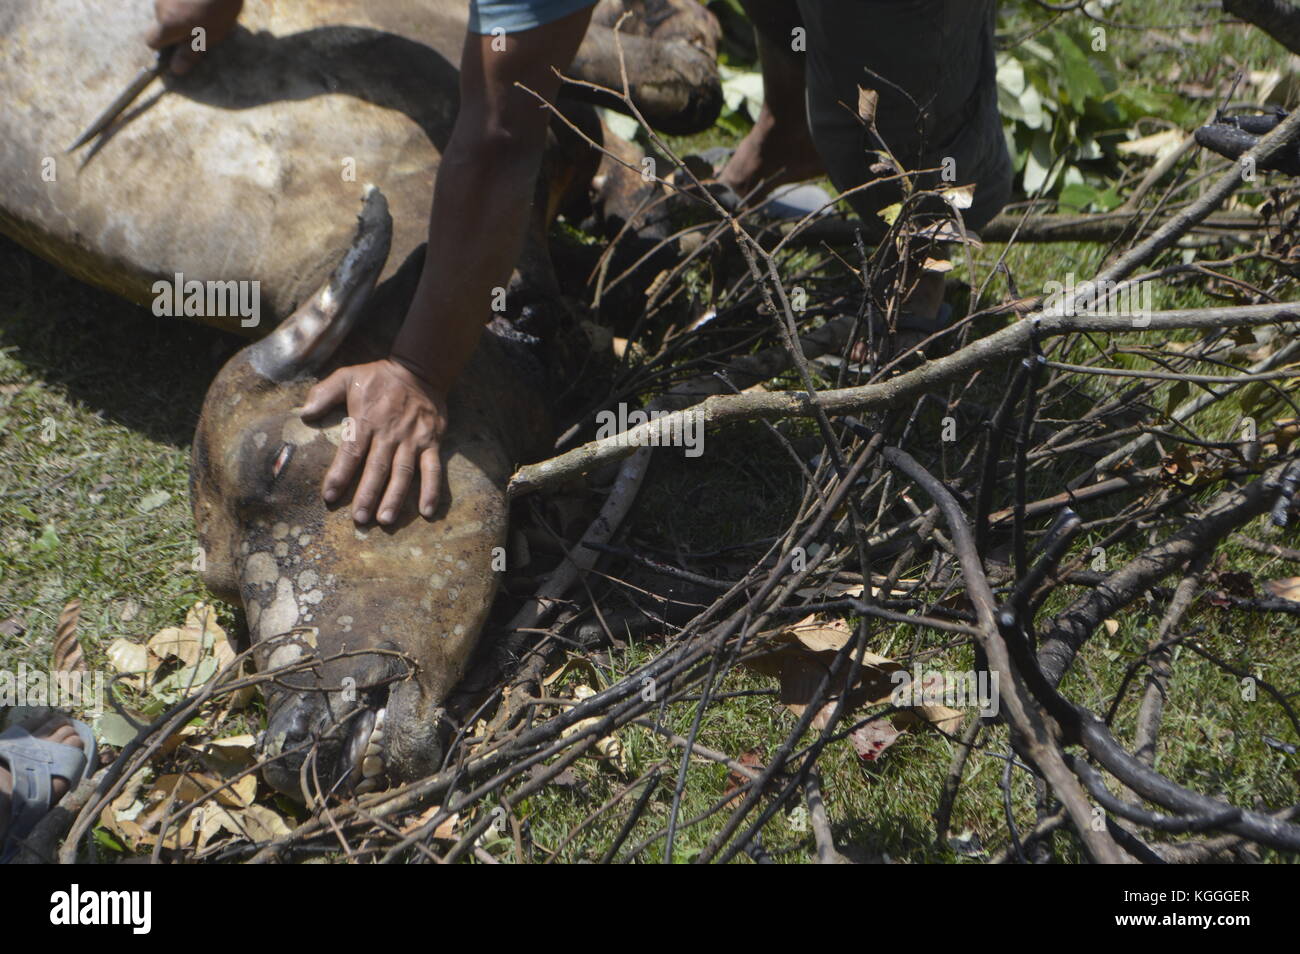 Matanza de búfalos de agua en la pequeña aldea nepalí en Humane Way. Muerto con 3 golpes del lado no afilado de un hacha en la cabeza. Todos los hombres ayudan. Foto de stock